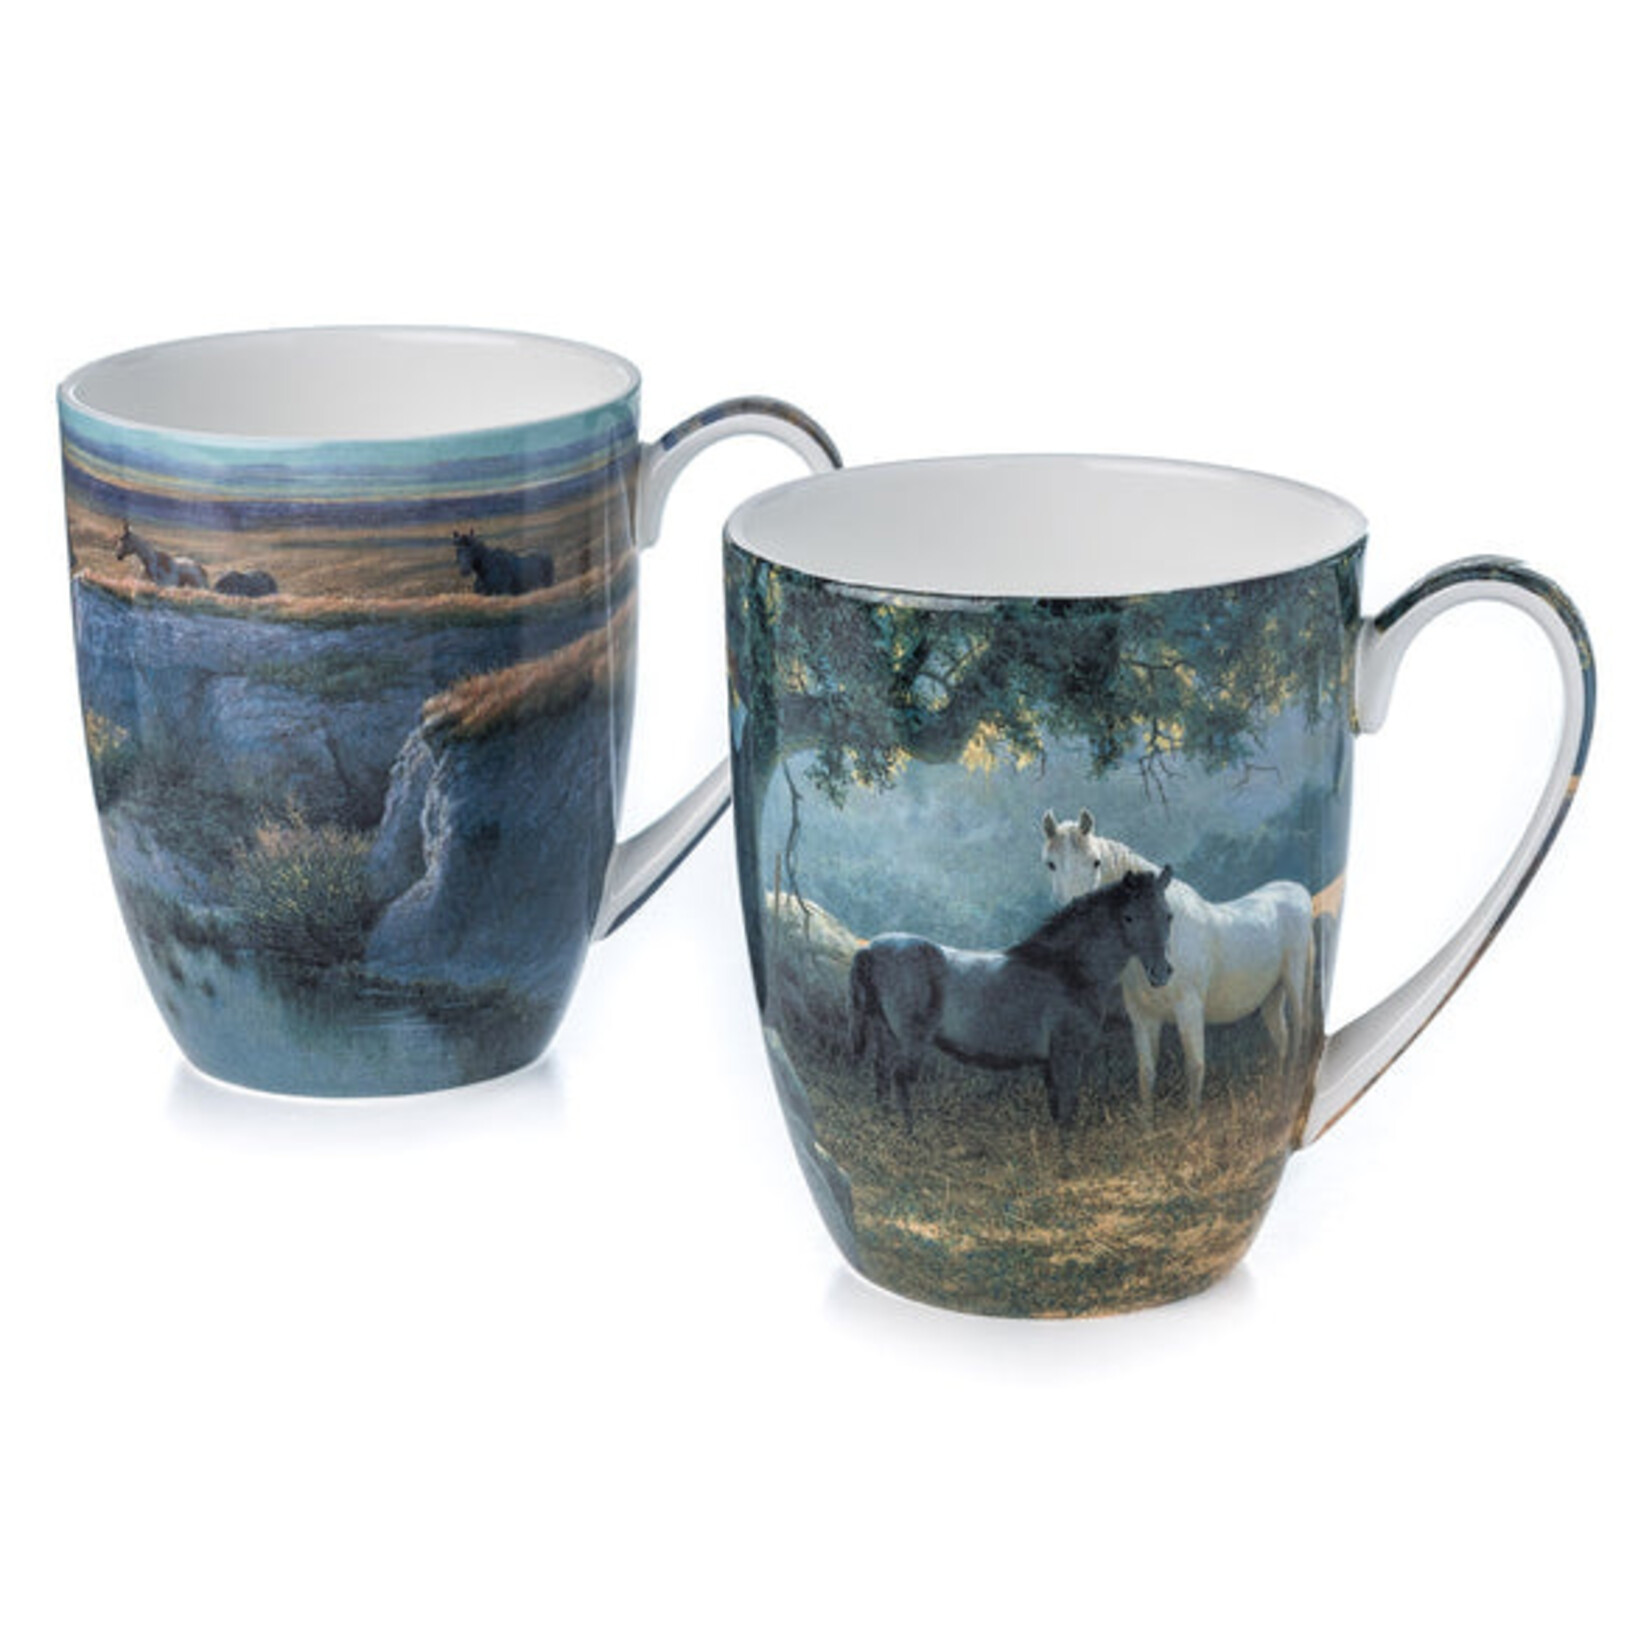 McIntosh Mug Set - Bateman - Horses